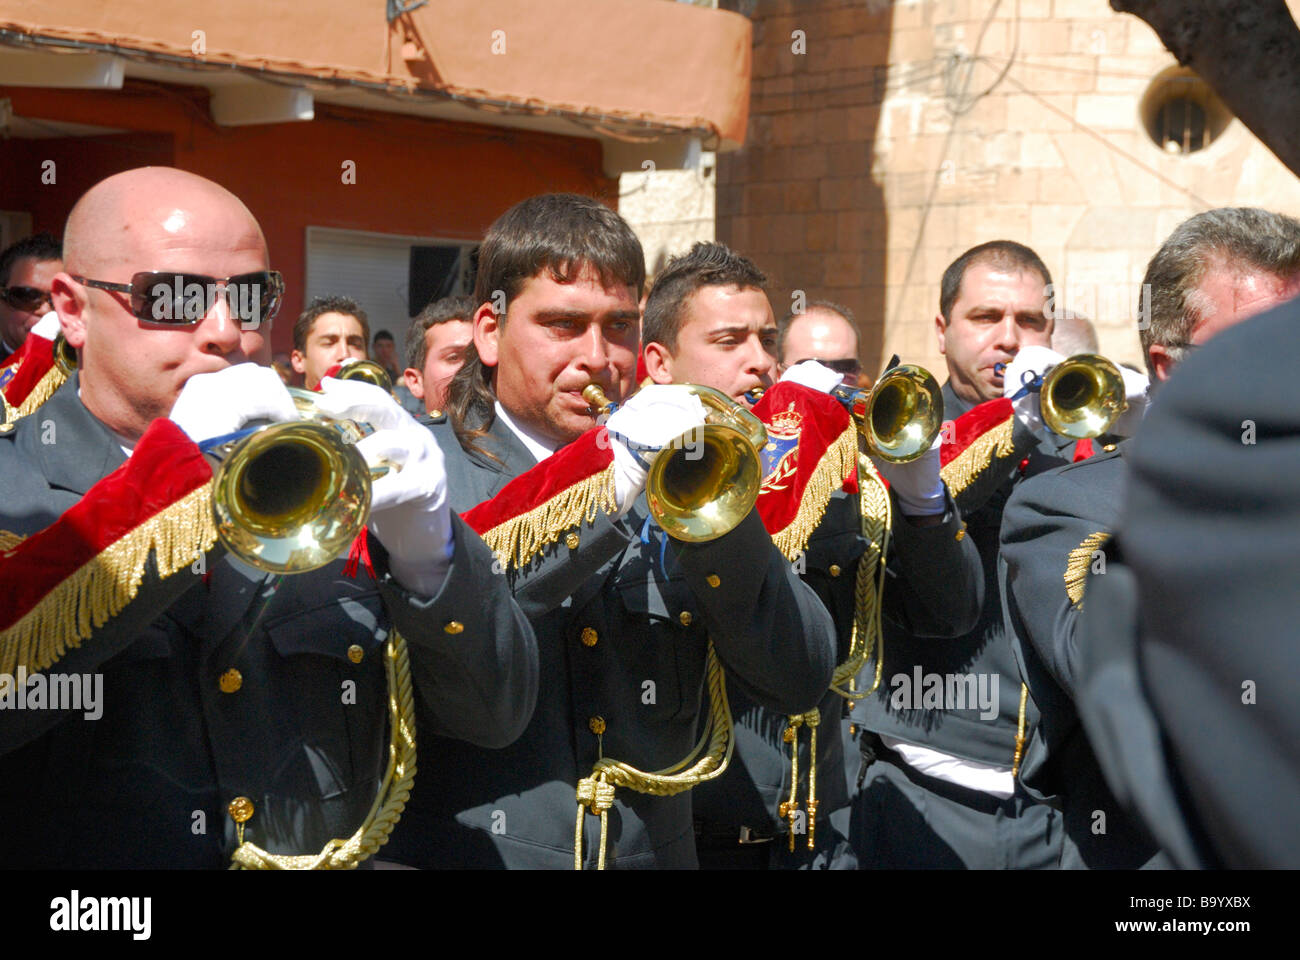 Musiciens qui jouent en cornet et tambour (cornetas y tambores) concours d'harmonies, Catral, Espagne Banque D'Images